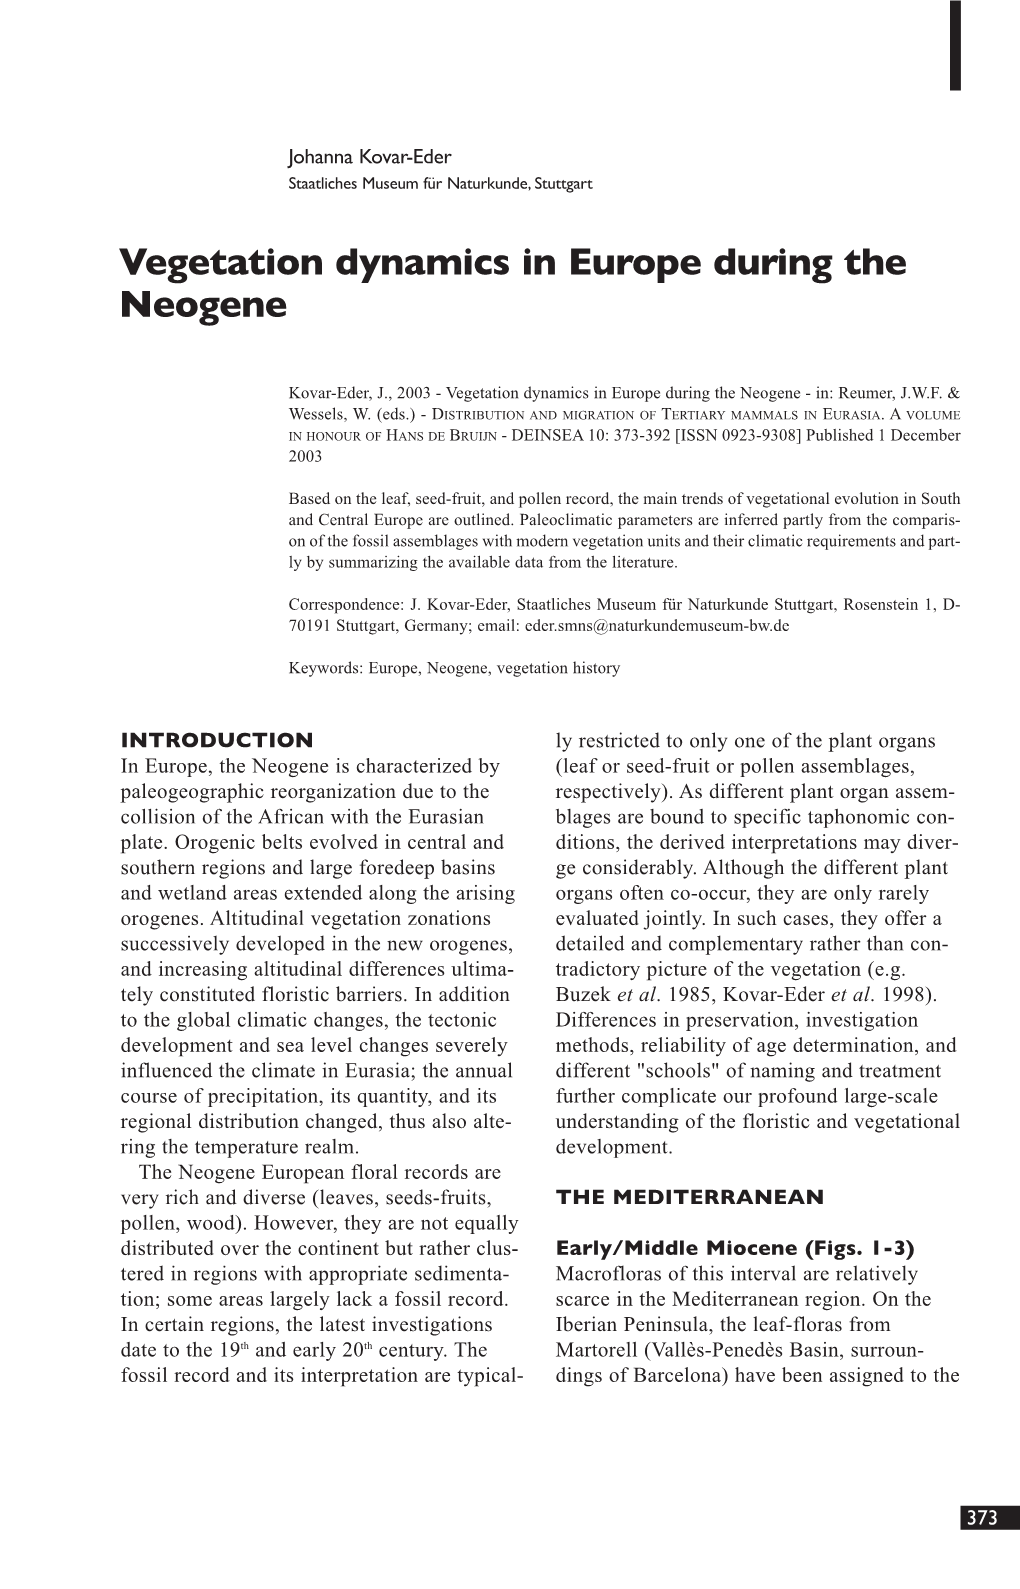 Vegetation Dynamics in Europe During the Neogene